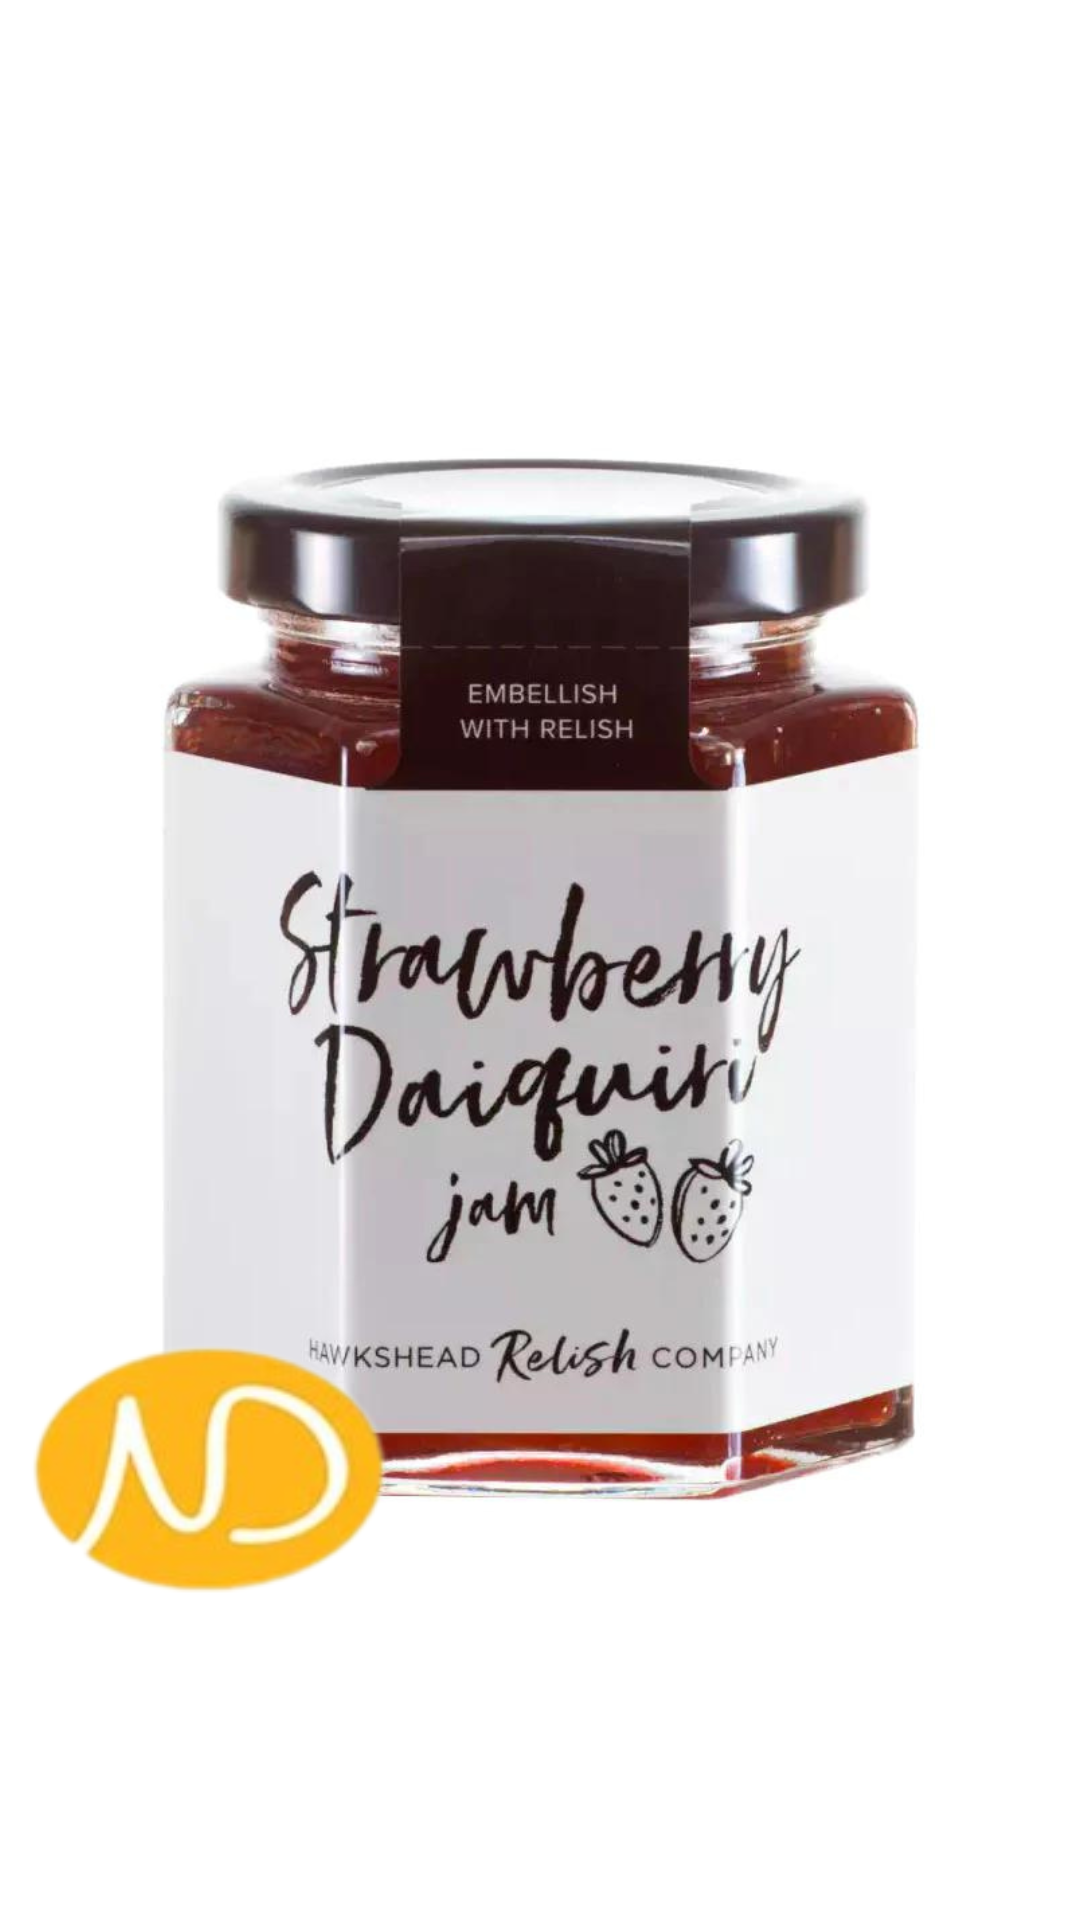 Strawberry Daiquiri Jam 225g